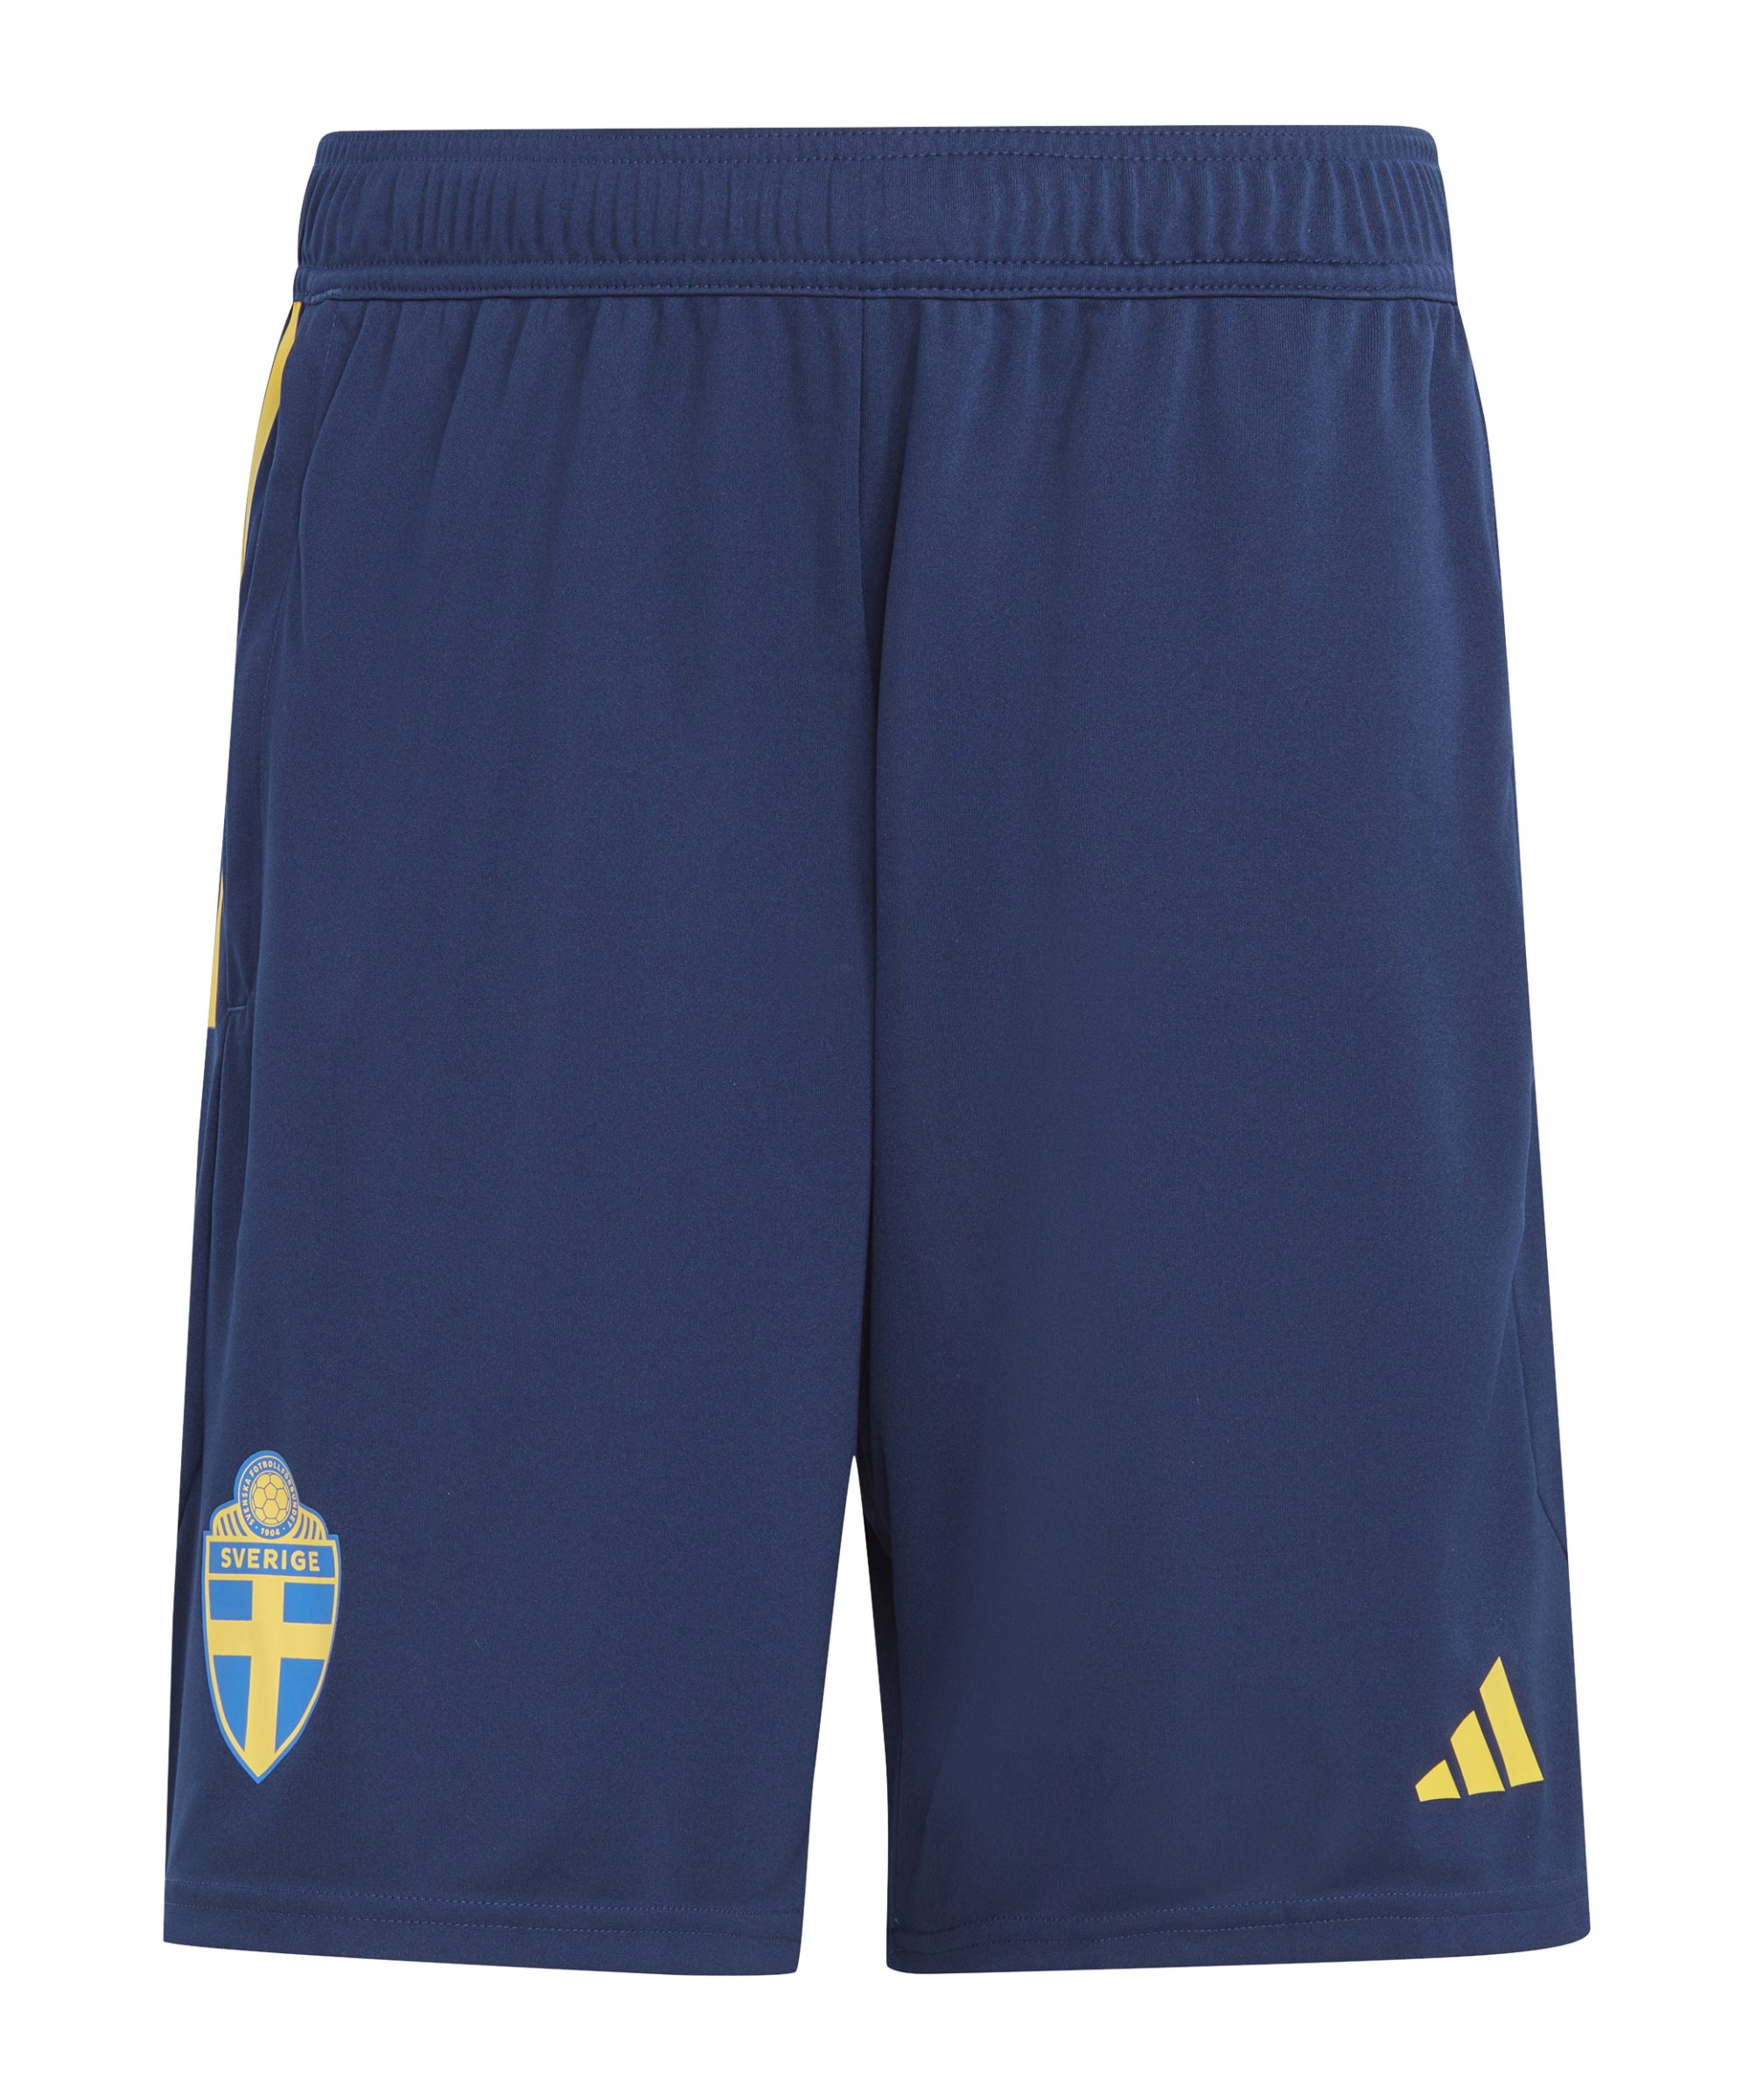 adidas Schweden Trainingsshort Blau Gelb - blau